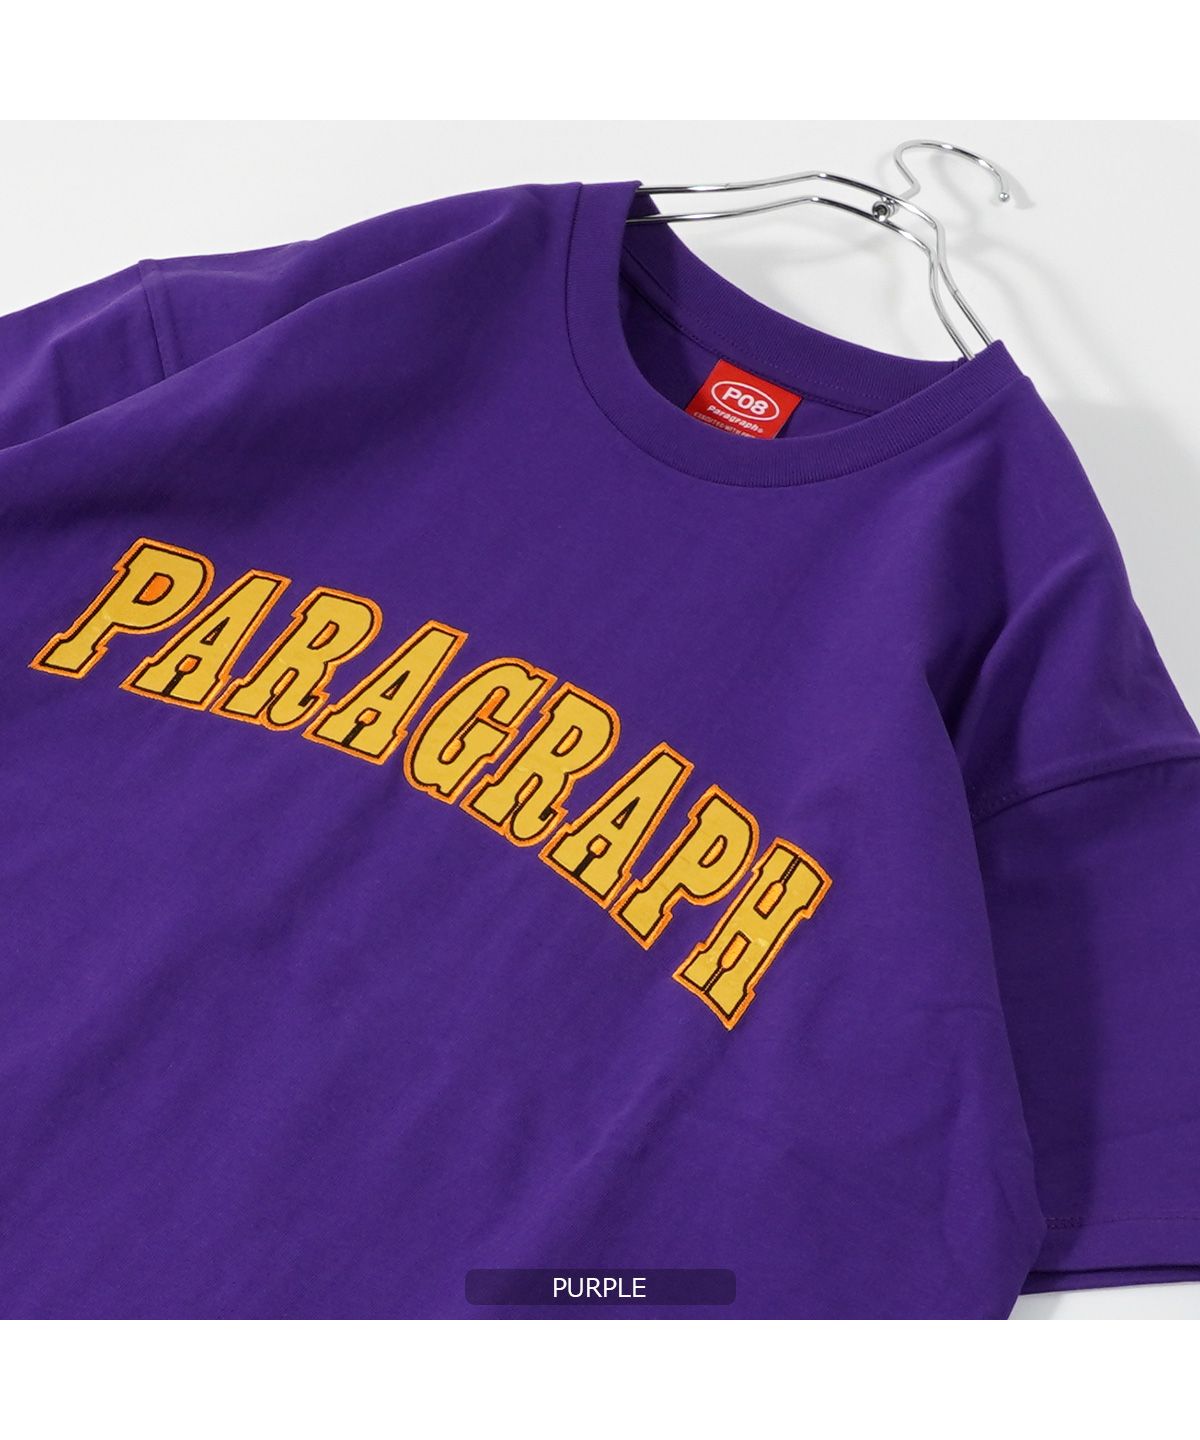 ◇Paragraph / パラグラフ Tシャツ◇ 正規品 ブランド tシャツ メンズ ...